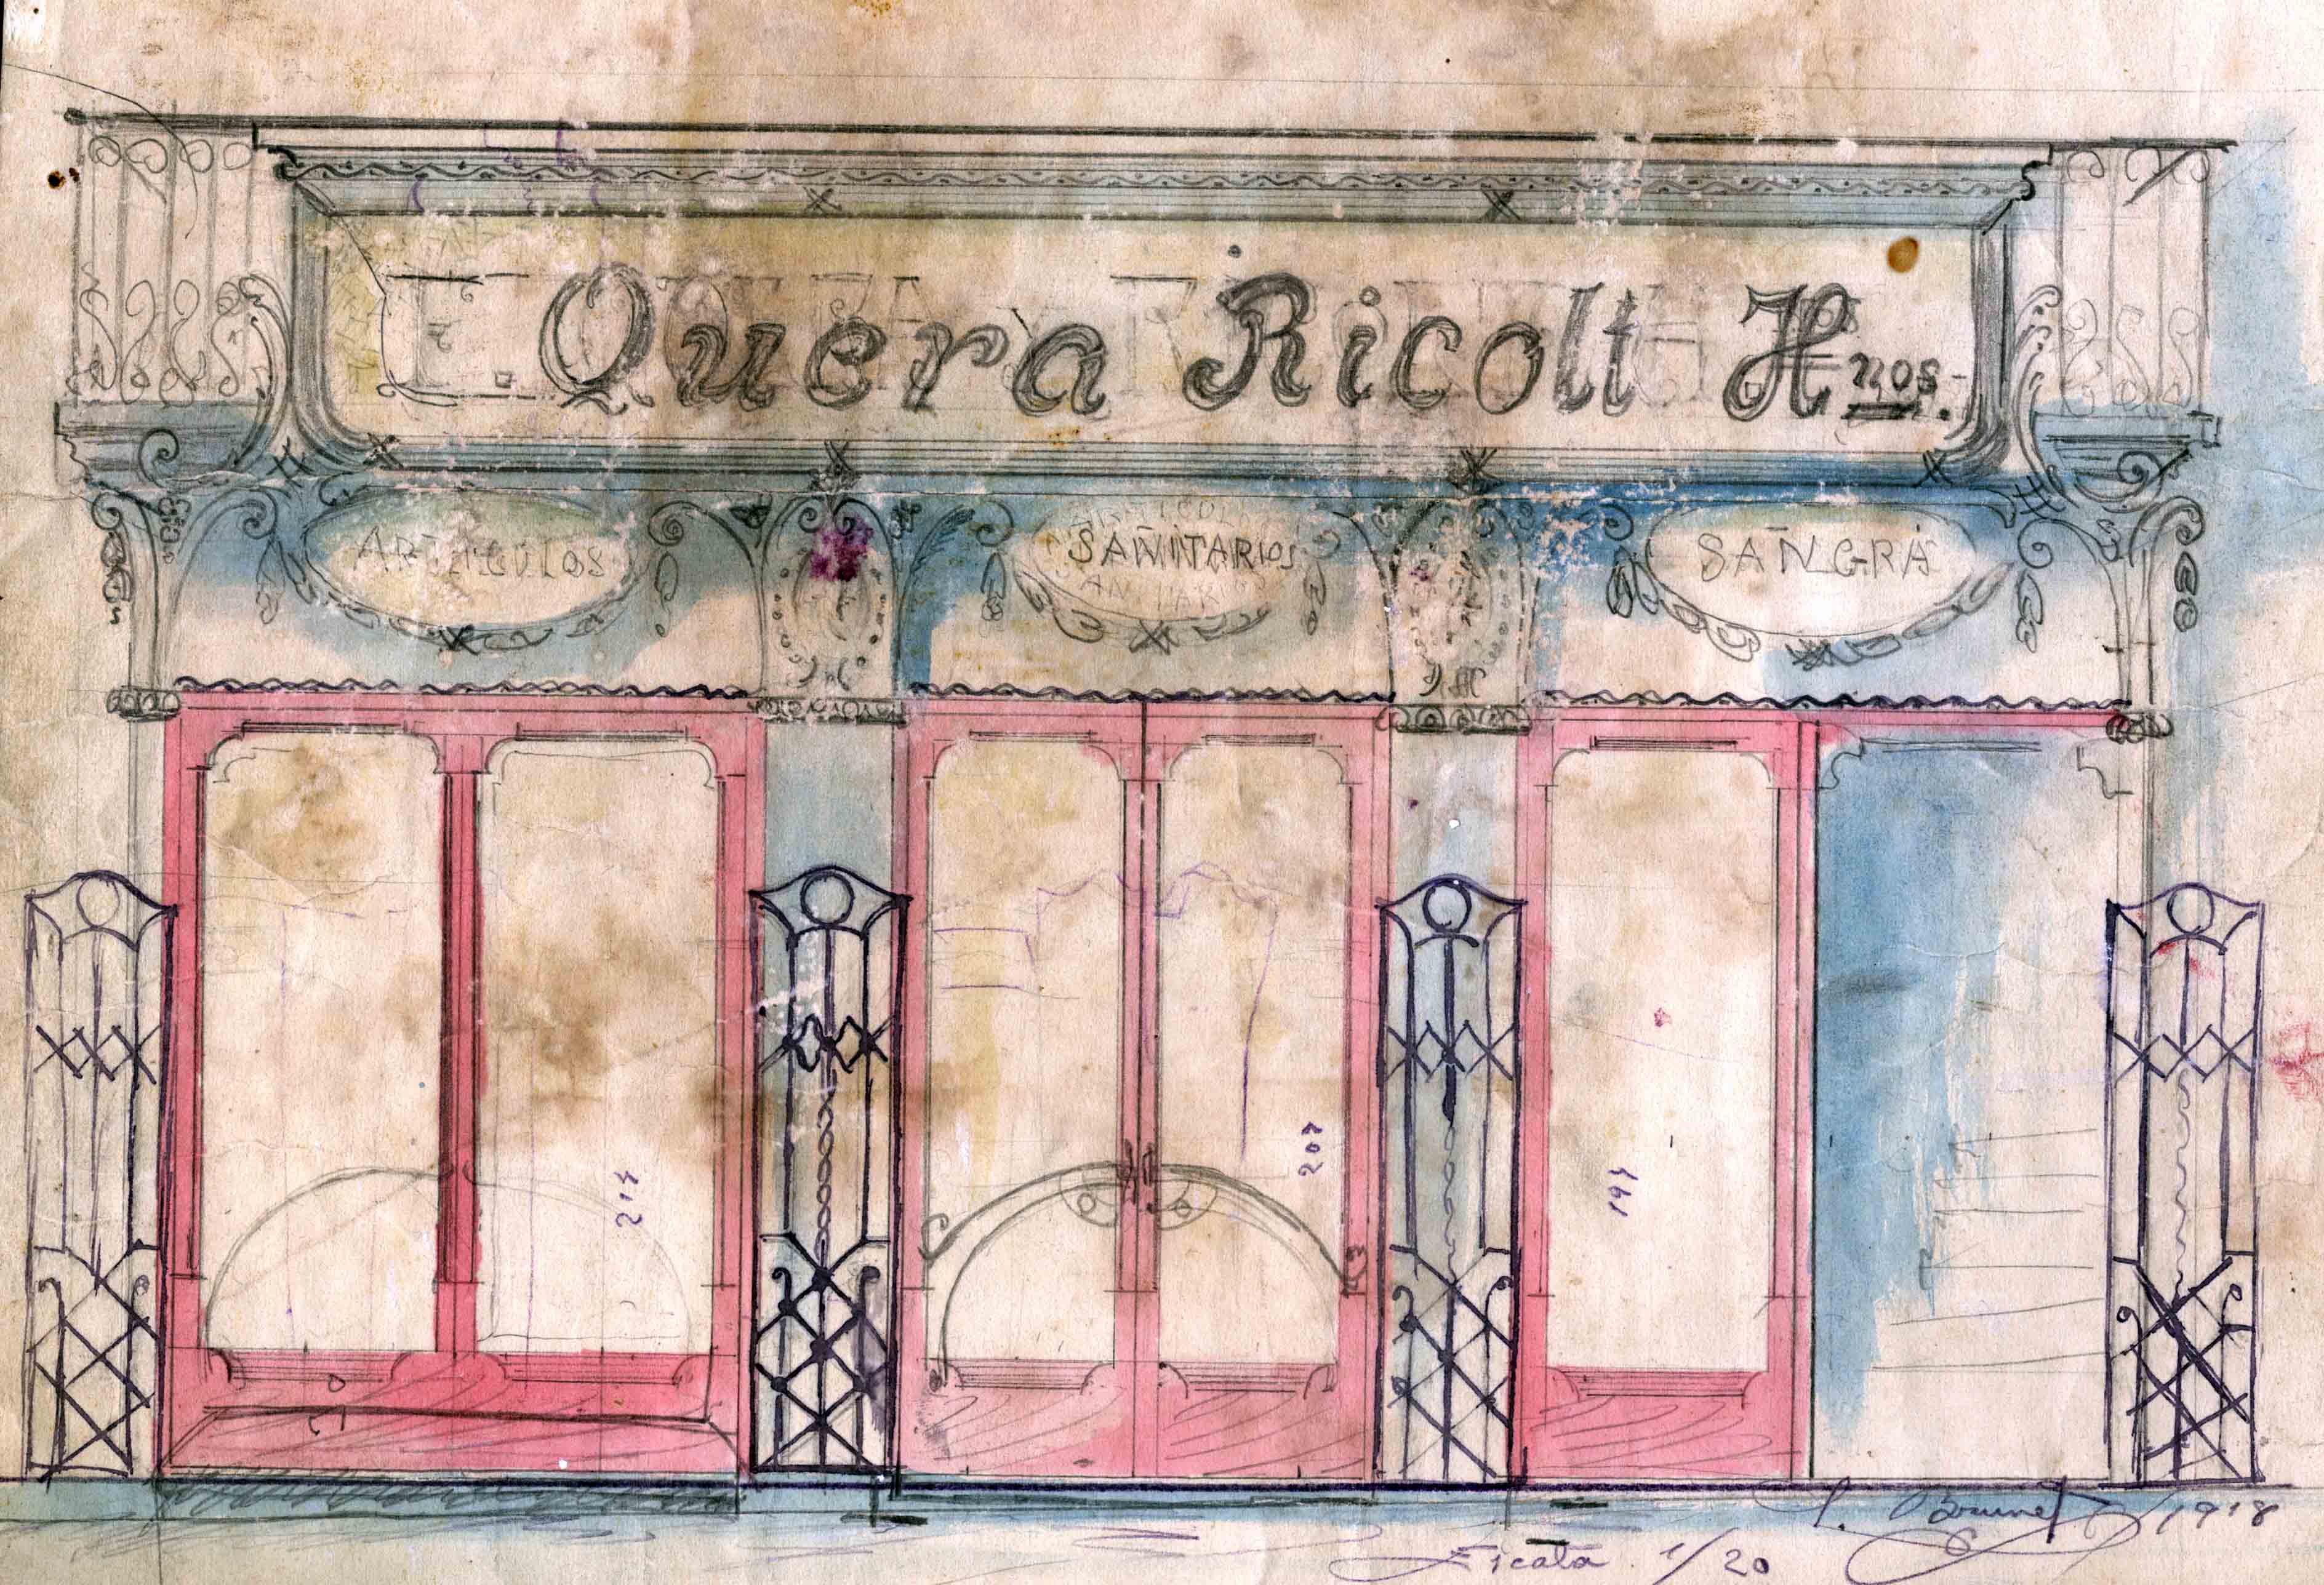 Esbós de la façana de la botiga Quera Ricolt, 1918